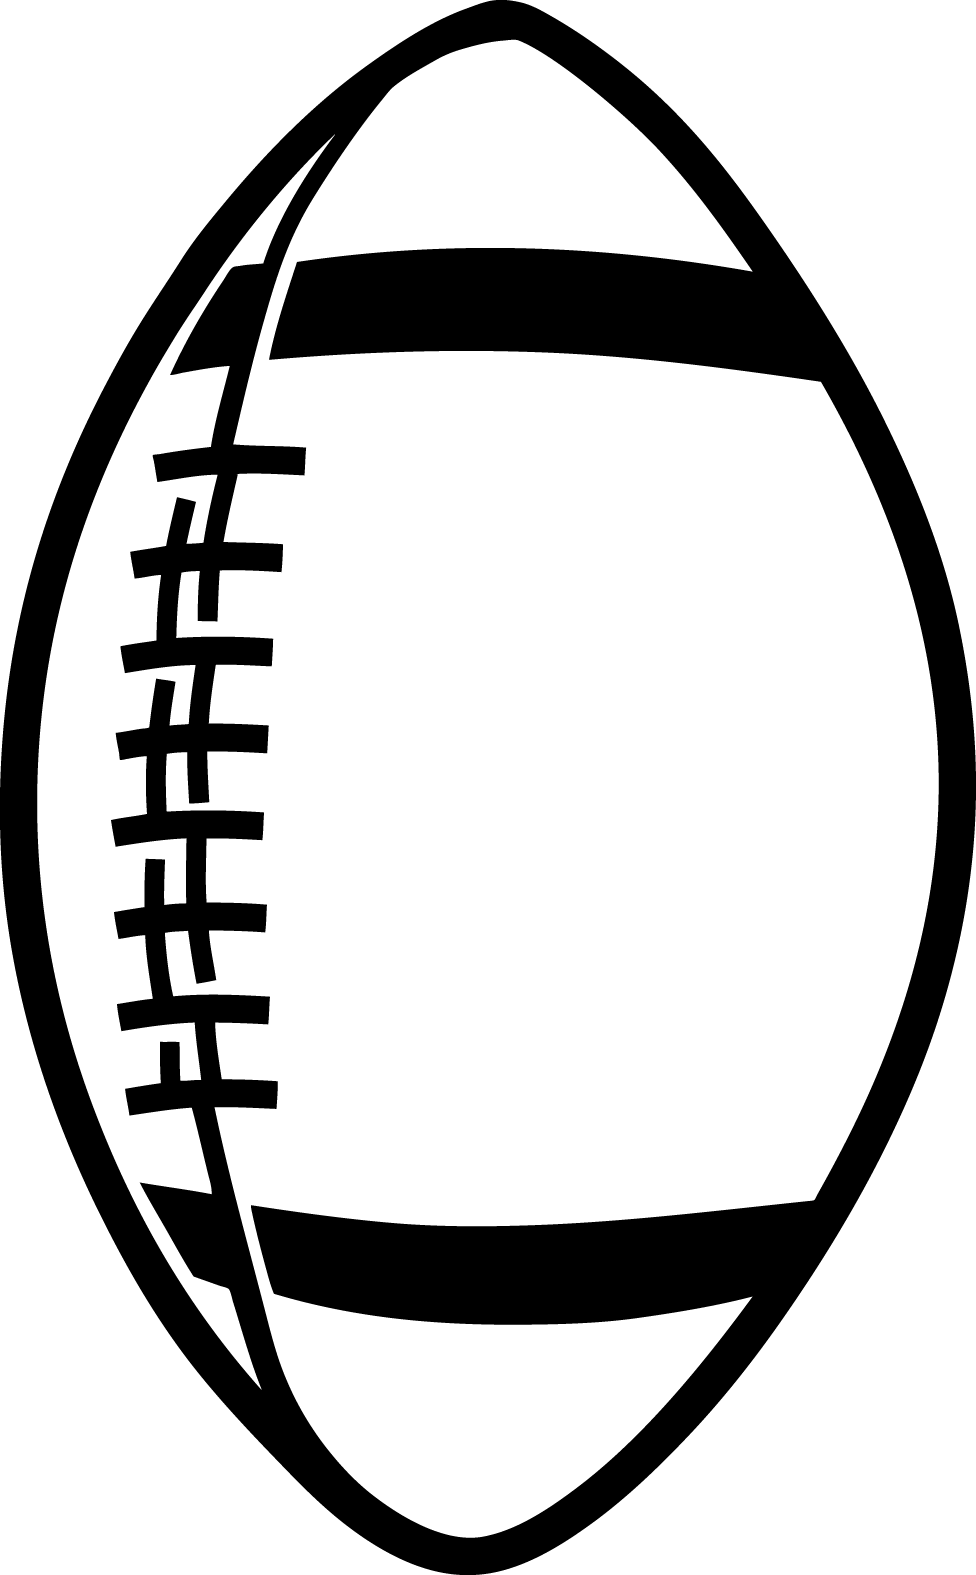 Football vector clipart